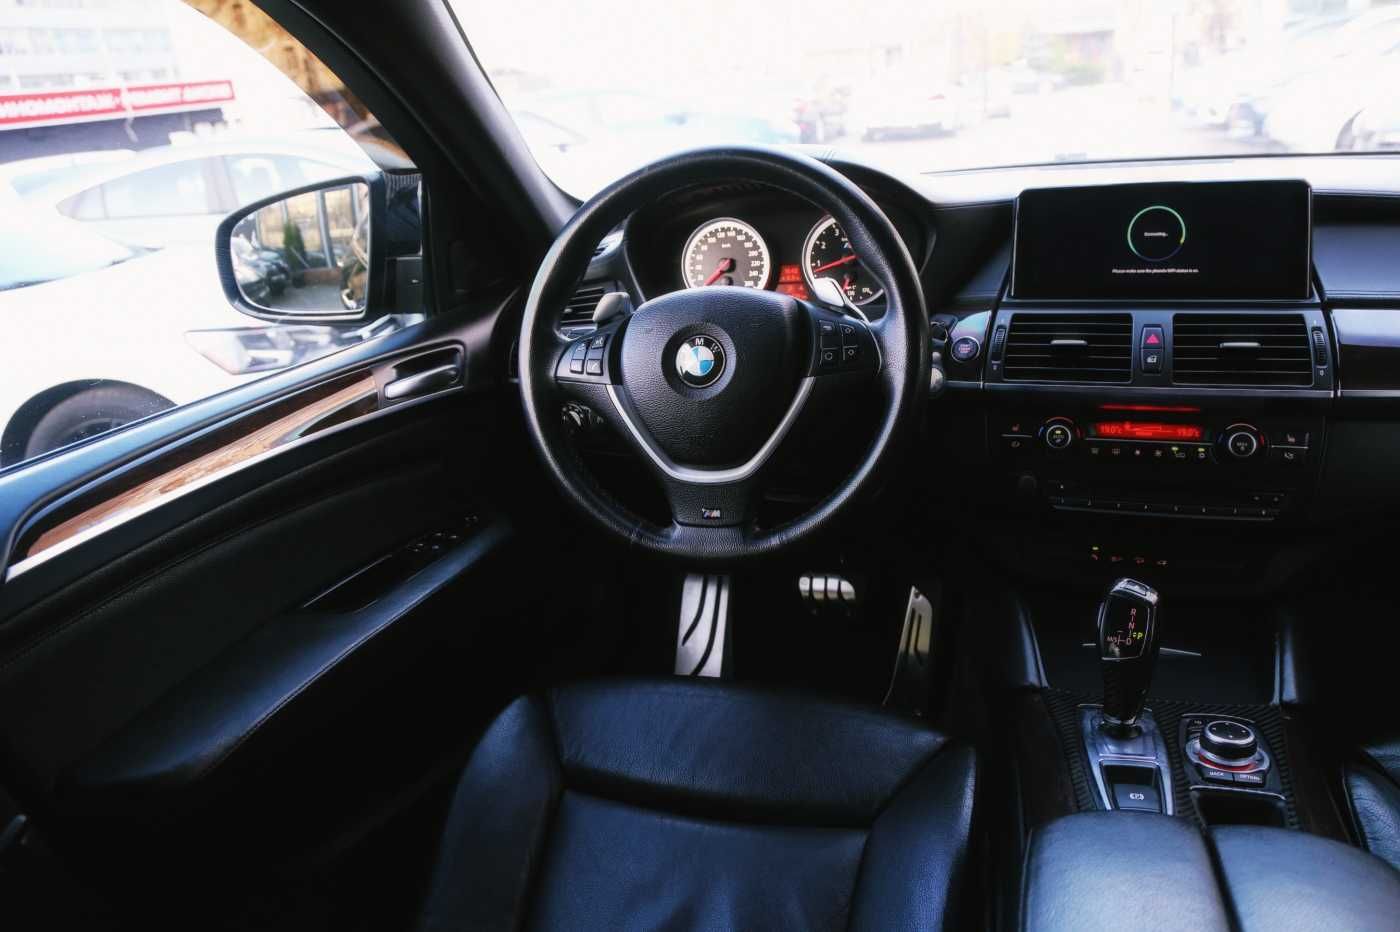 BMW X6 2010 Без ДТП, с Германии, Обслужена